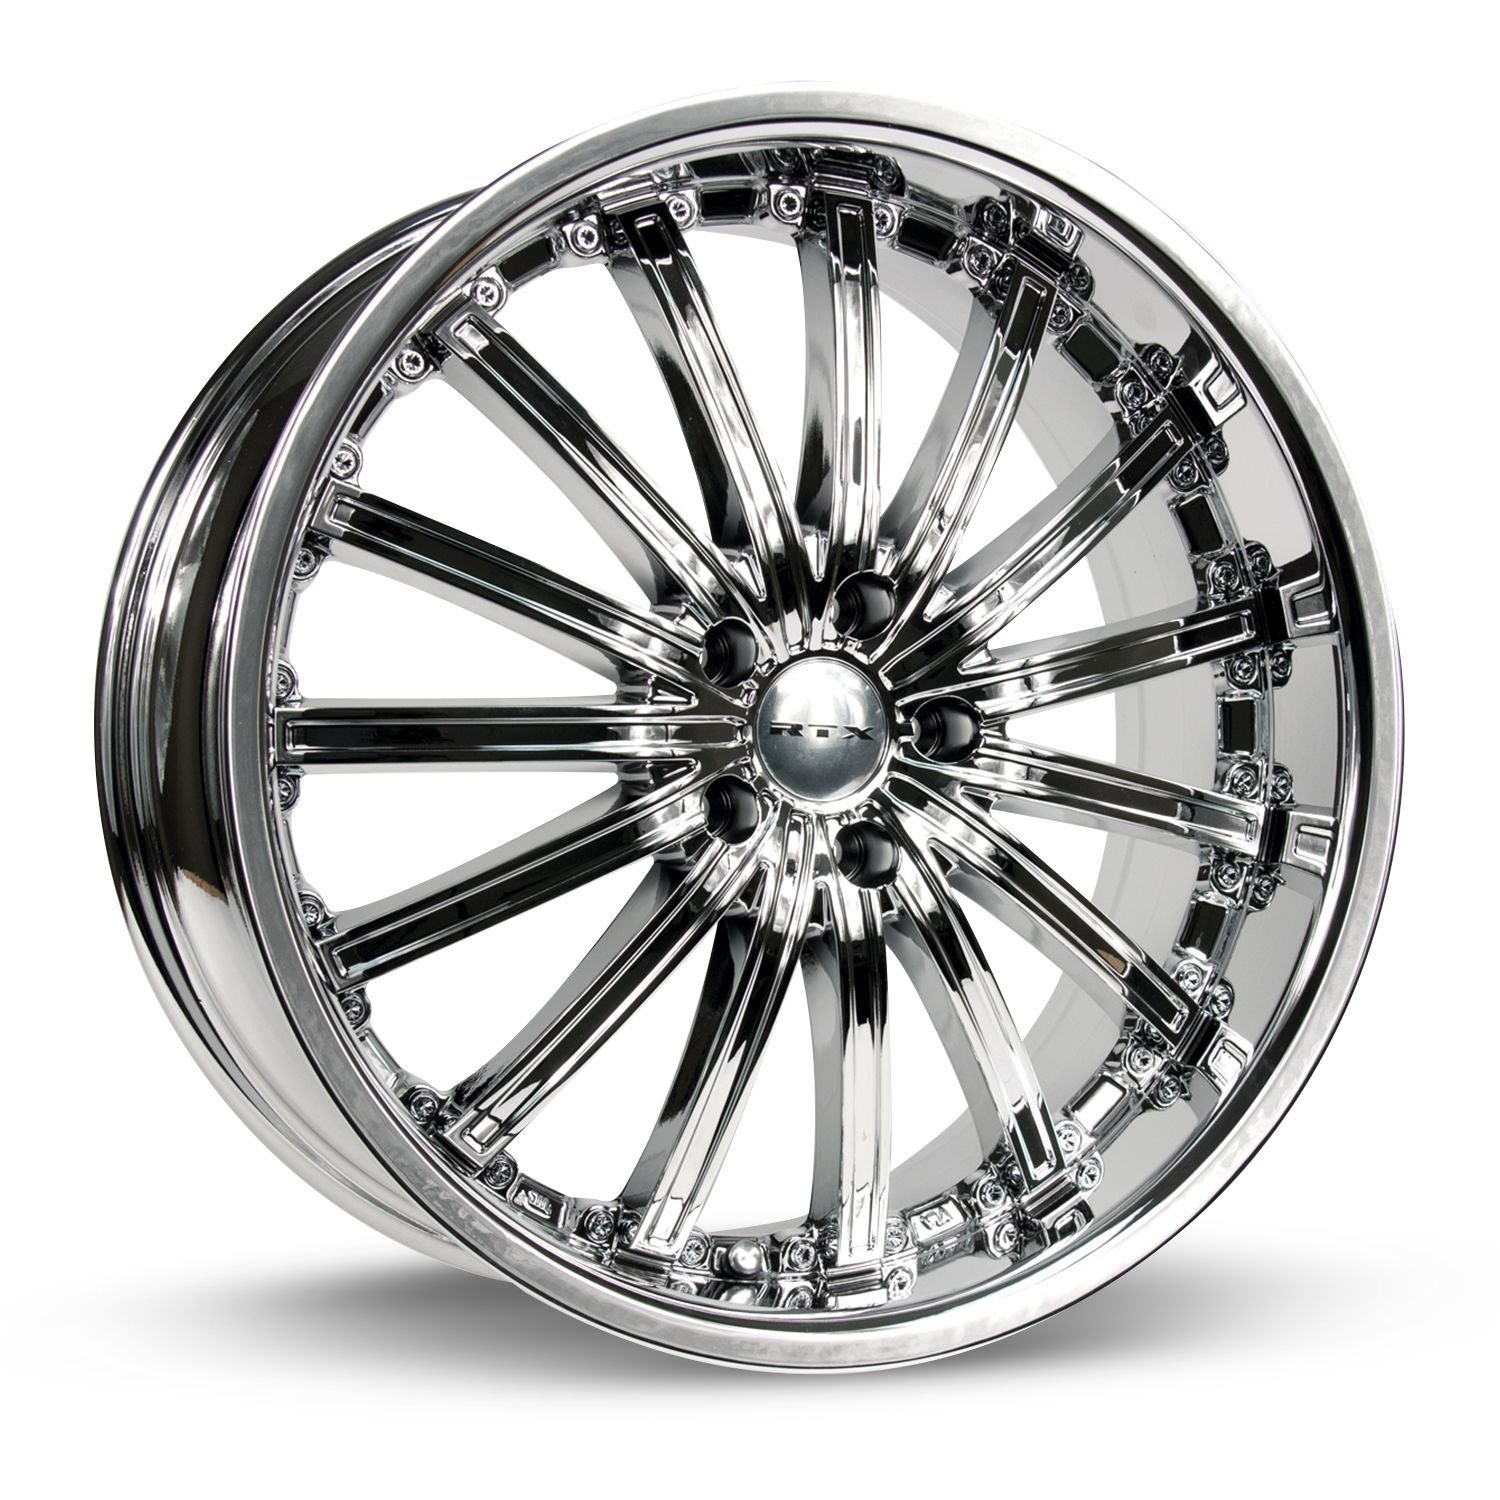 081293 RTX-Series Elite Wheel [Size: 18" x 8"] Chrome / PVD Finish